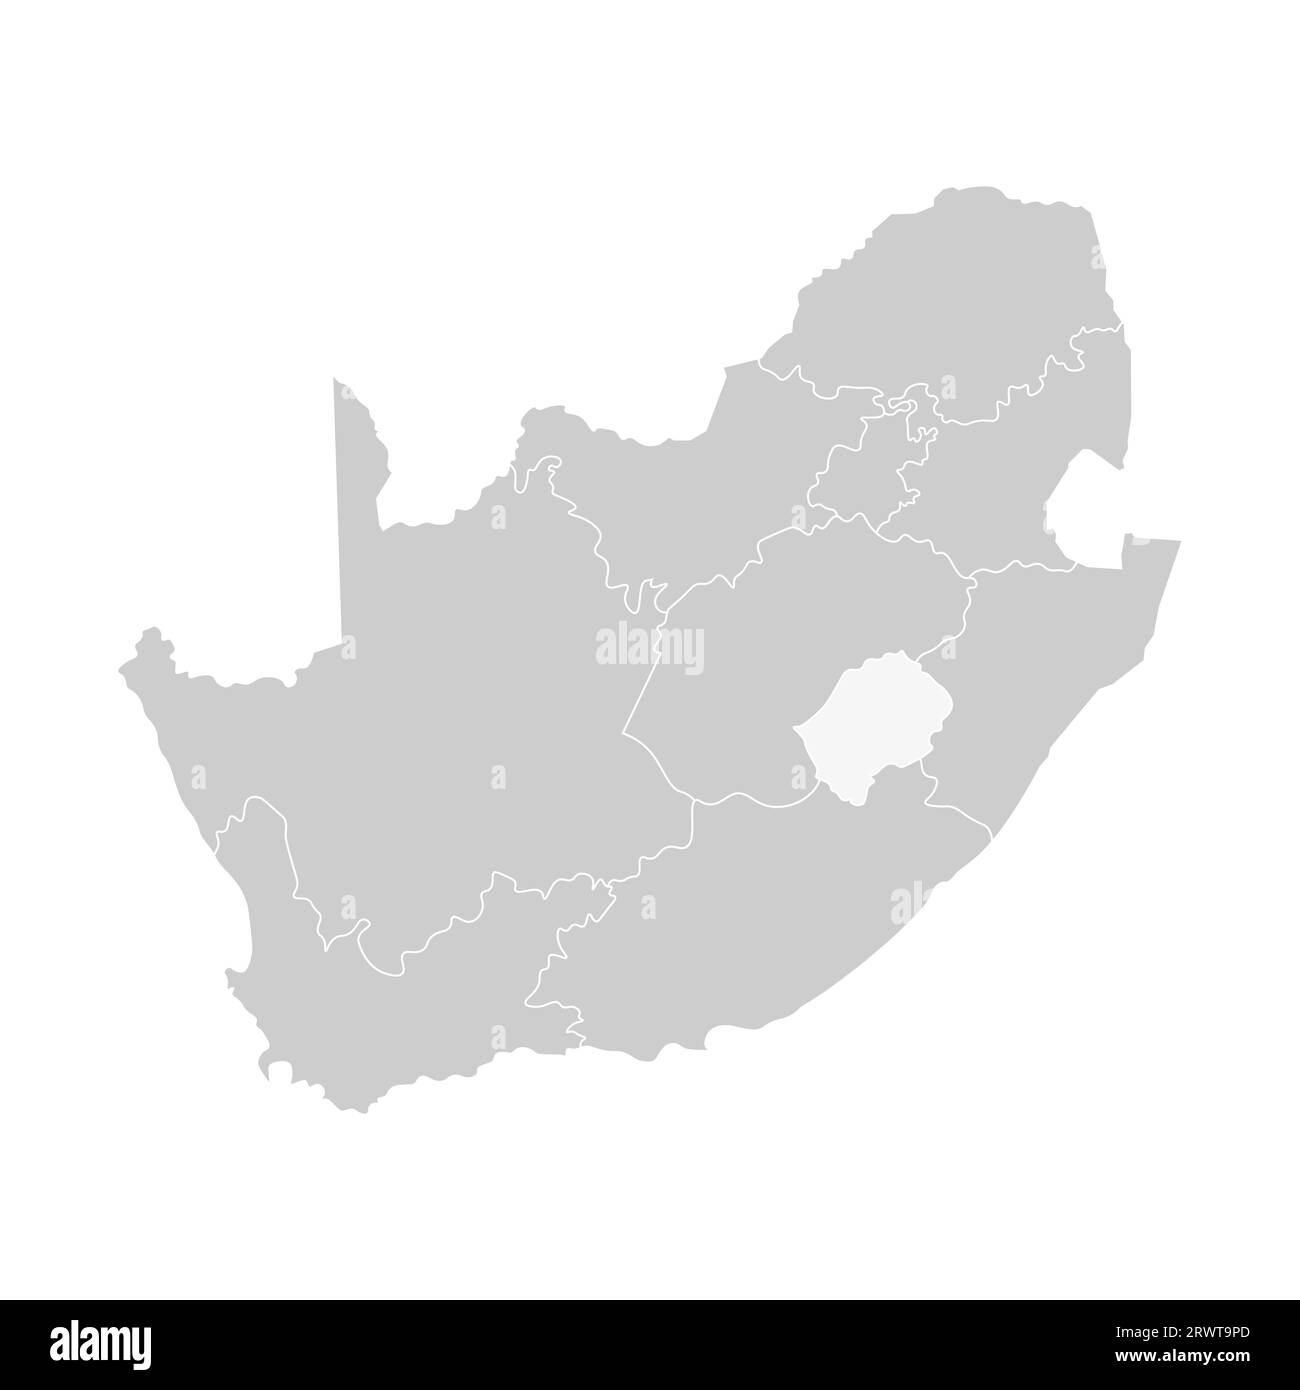 Vektorisolierte Darstellung einer vereinfachten Verwaltungskarte Südafrikas. Grenzen der Provinzen (Regionen). Graue Silhouetten. Weiße Umrandung. Stock Vektor